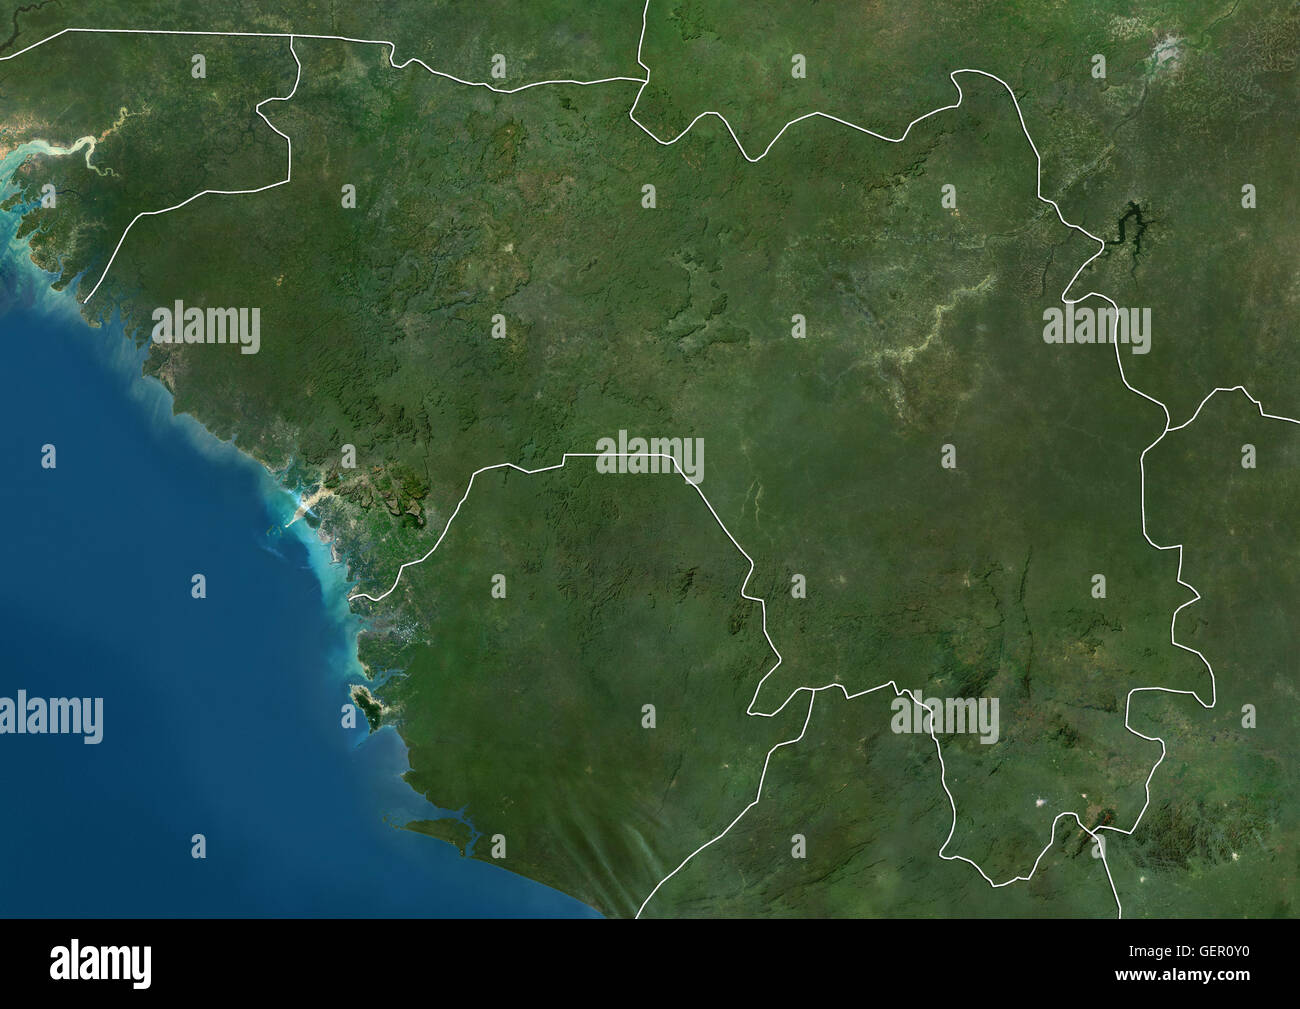 Satellitenansicht von Guinea (mit Ländergrenzen). Dieses Bild wurde aus Daten von Landsat-Satelliten erworben erstellt. Stockfoto